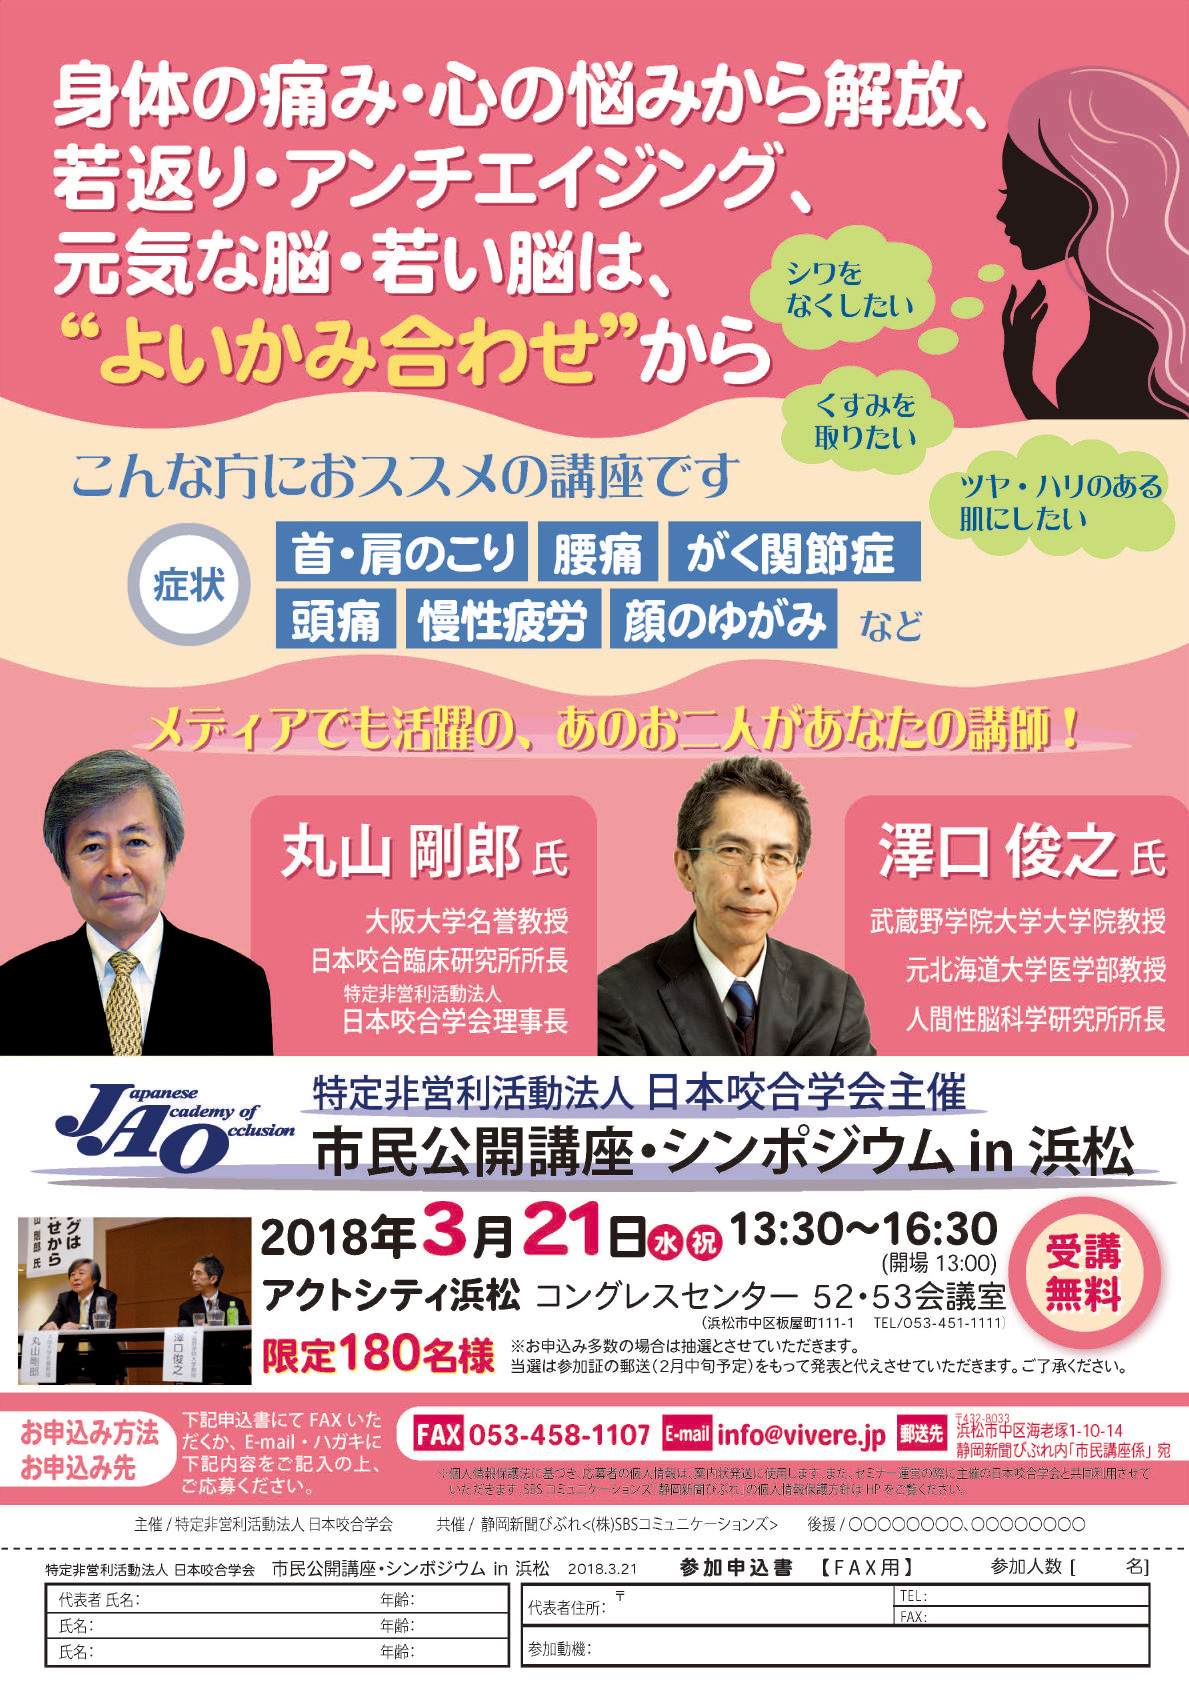 3月20日 市民公開講座 in 浜松